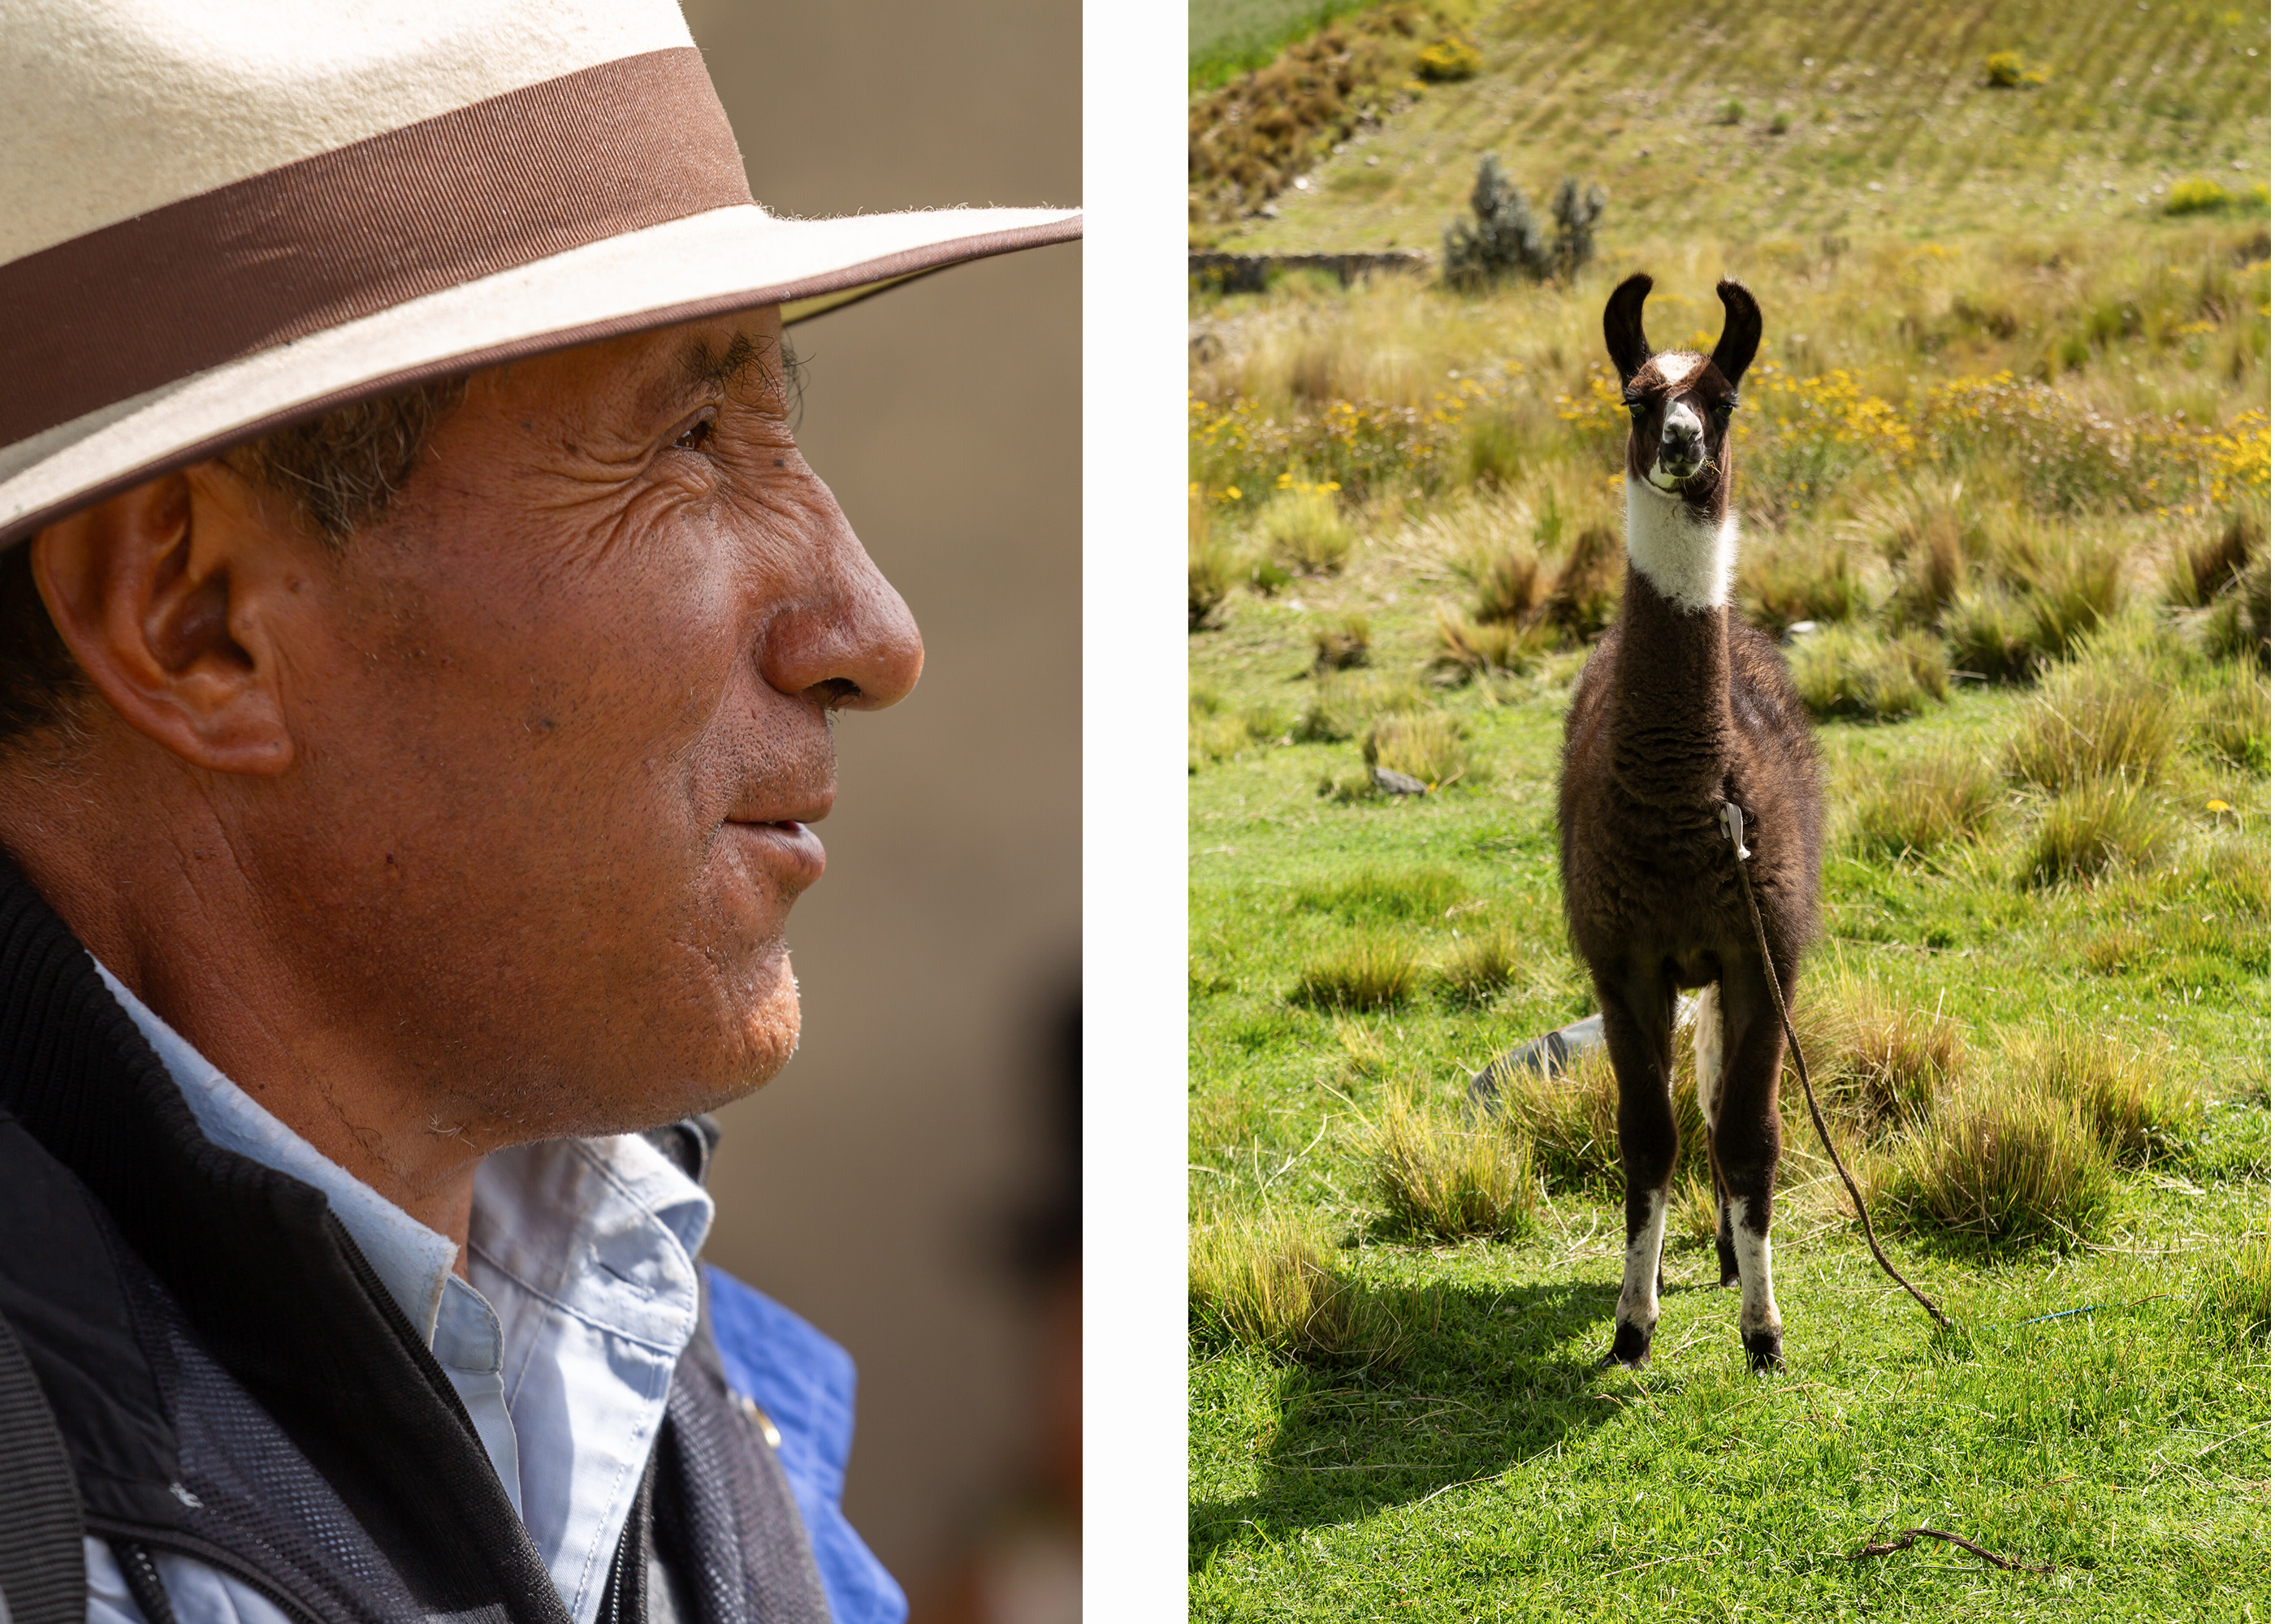 Duas imagens: a da esquerda mostra um homem e a da direita, um alpaca.